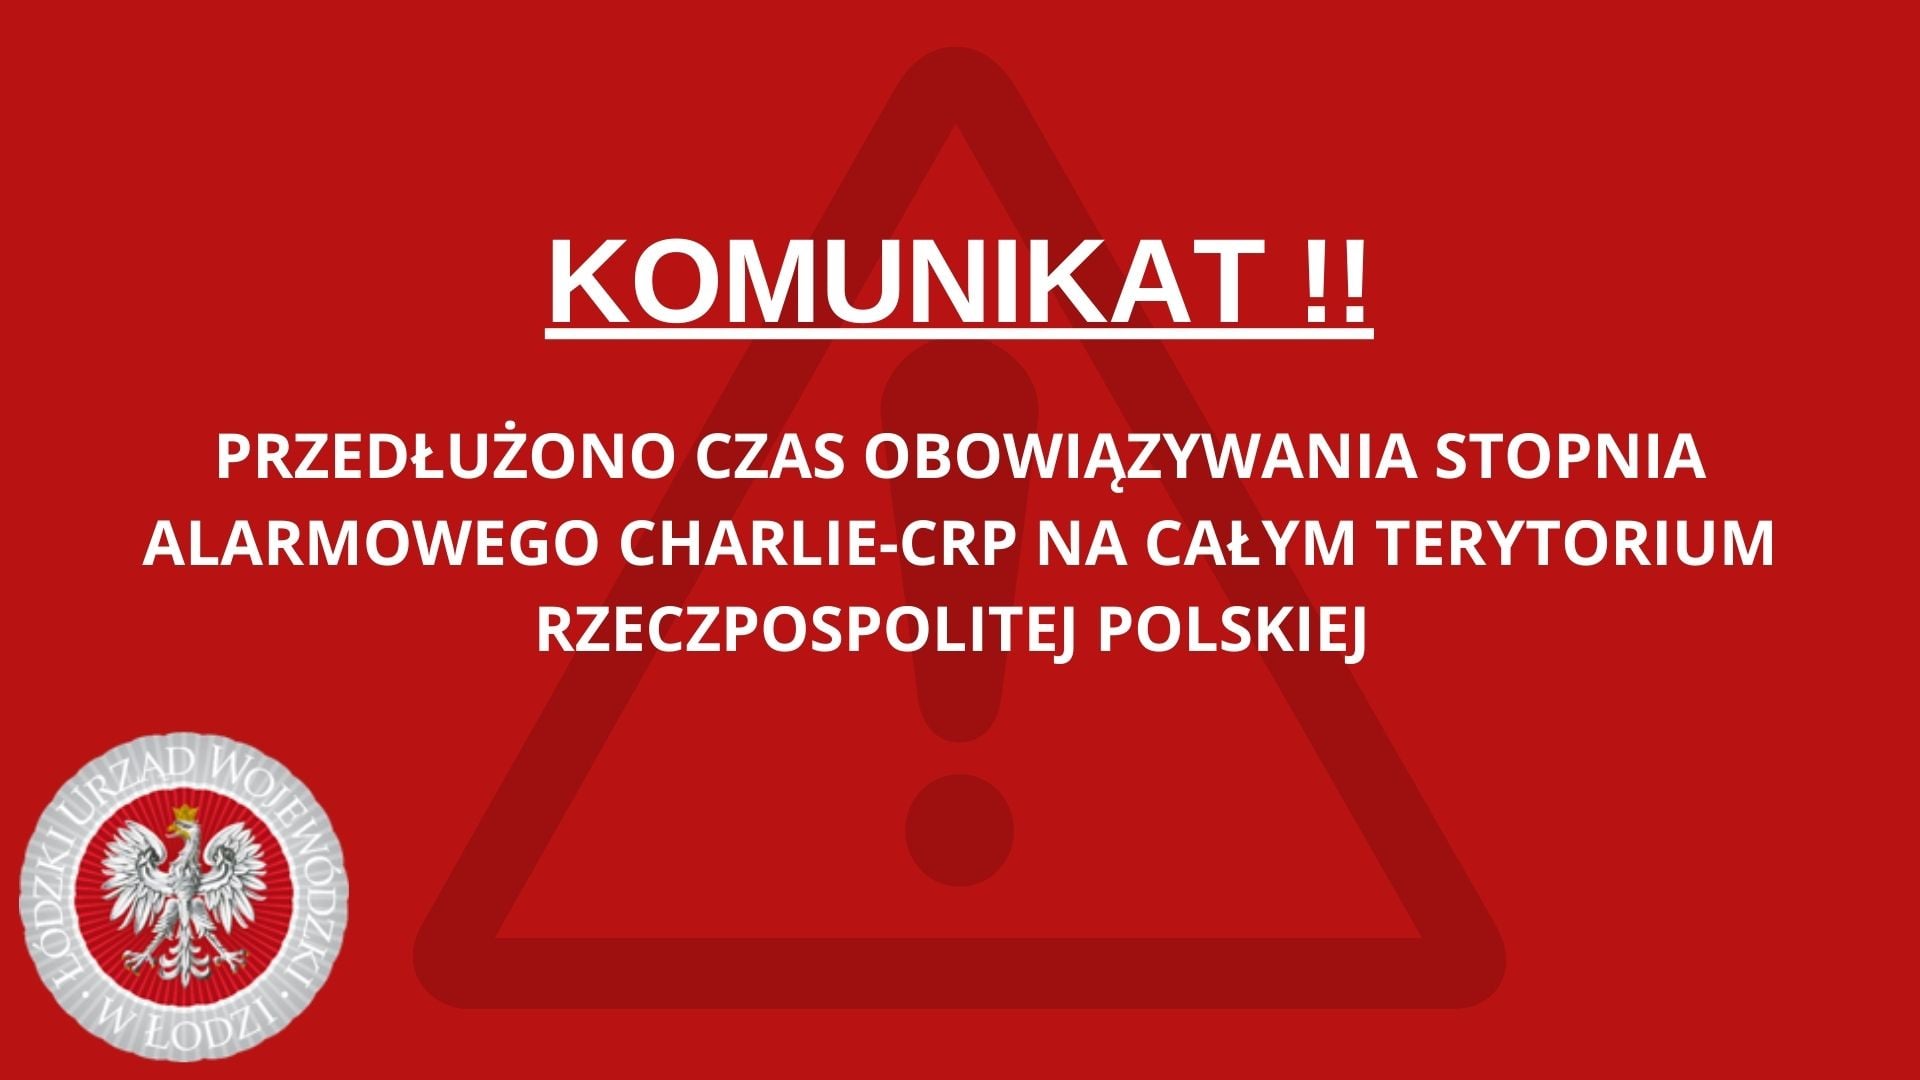 3. stopień CHARLIE-CRP na całym terytorium Rzeczypospolitej Polskiej do 31 marca 2022 r.